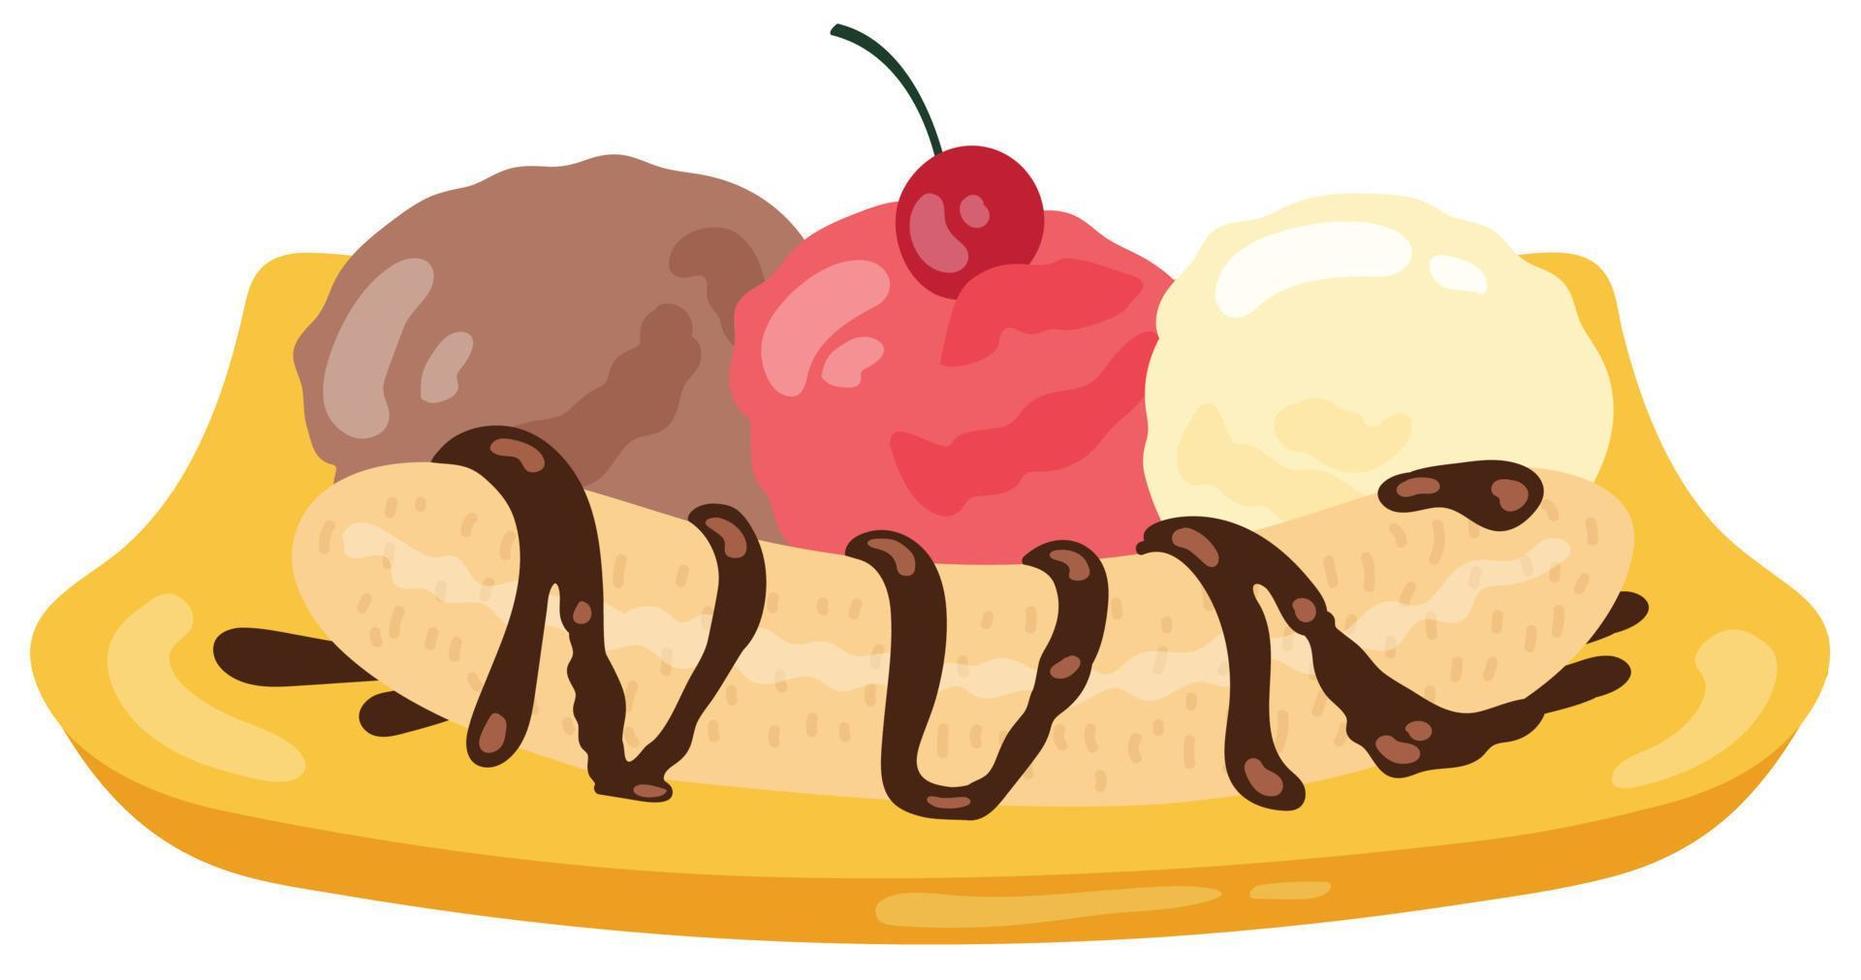 banana split. postre helado. ilustración vectorial dibujada a mano. adecuado para sitio web, postales, menú, pegatinas. vector